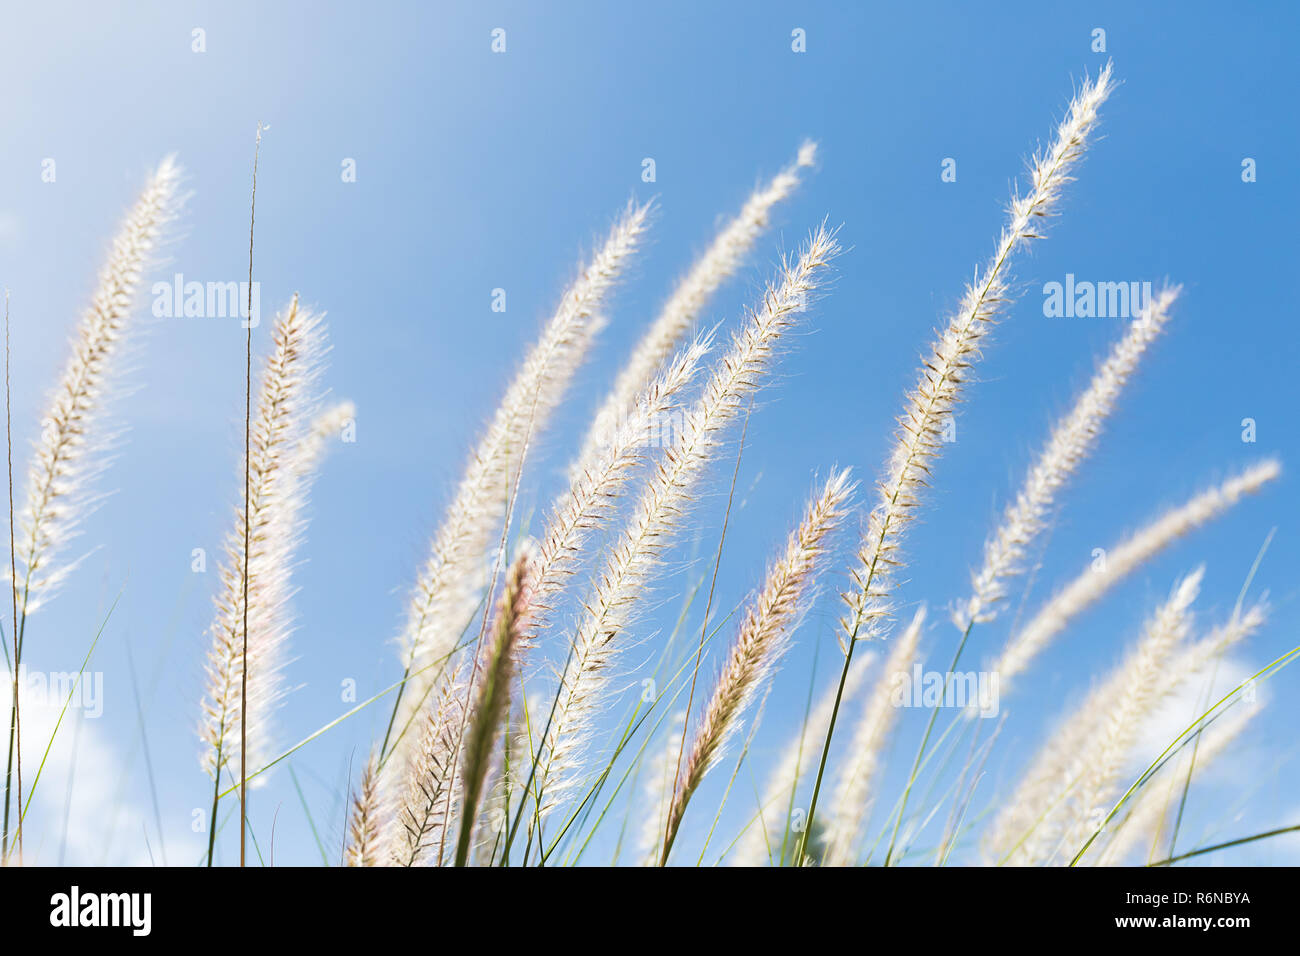 Cogon Grass on blue sky background Stock Photo